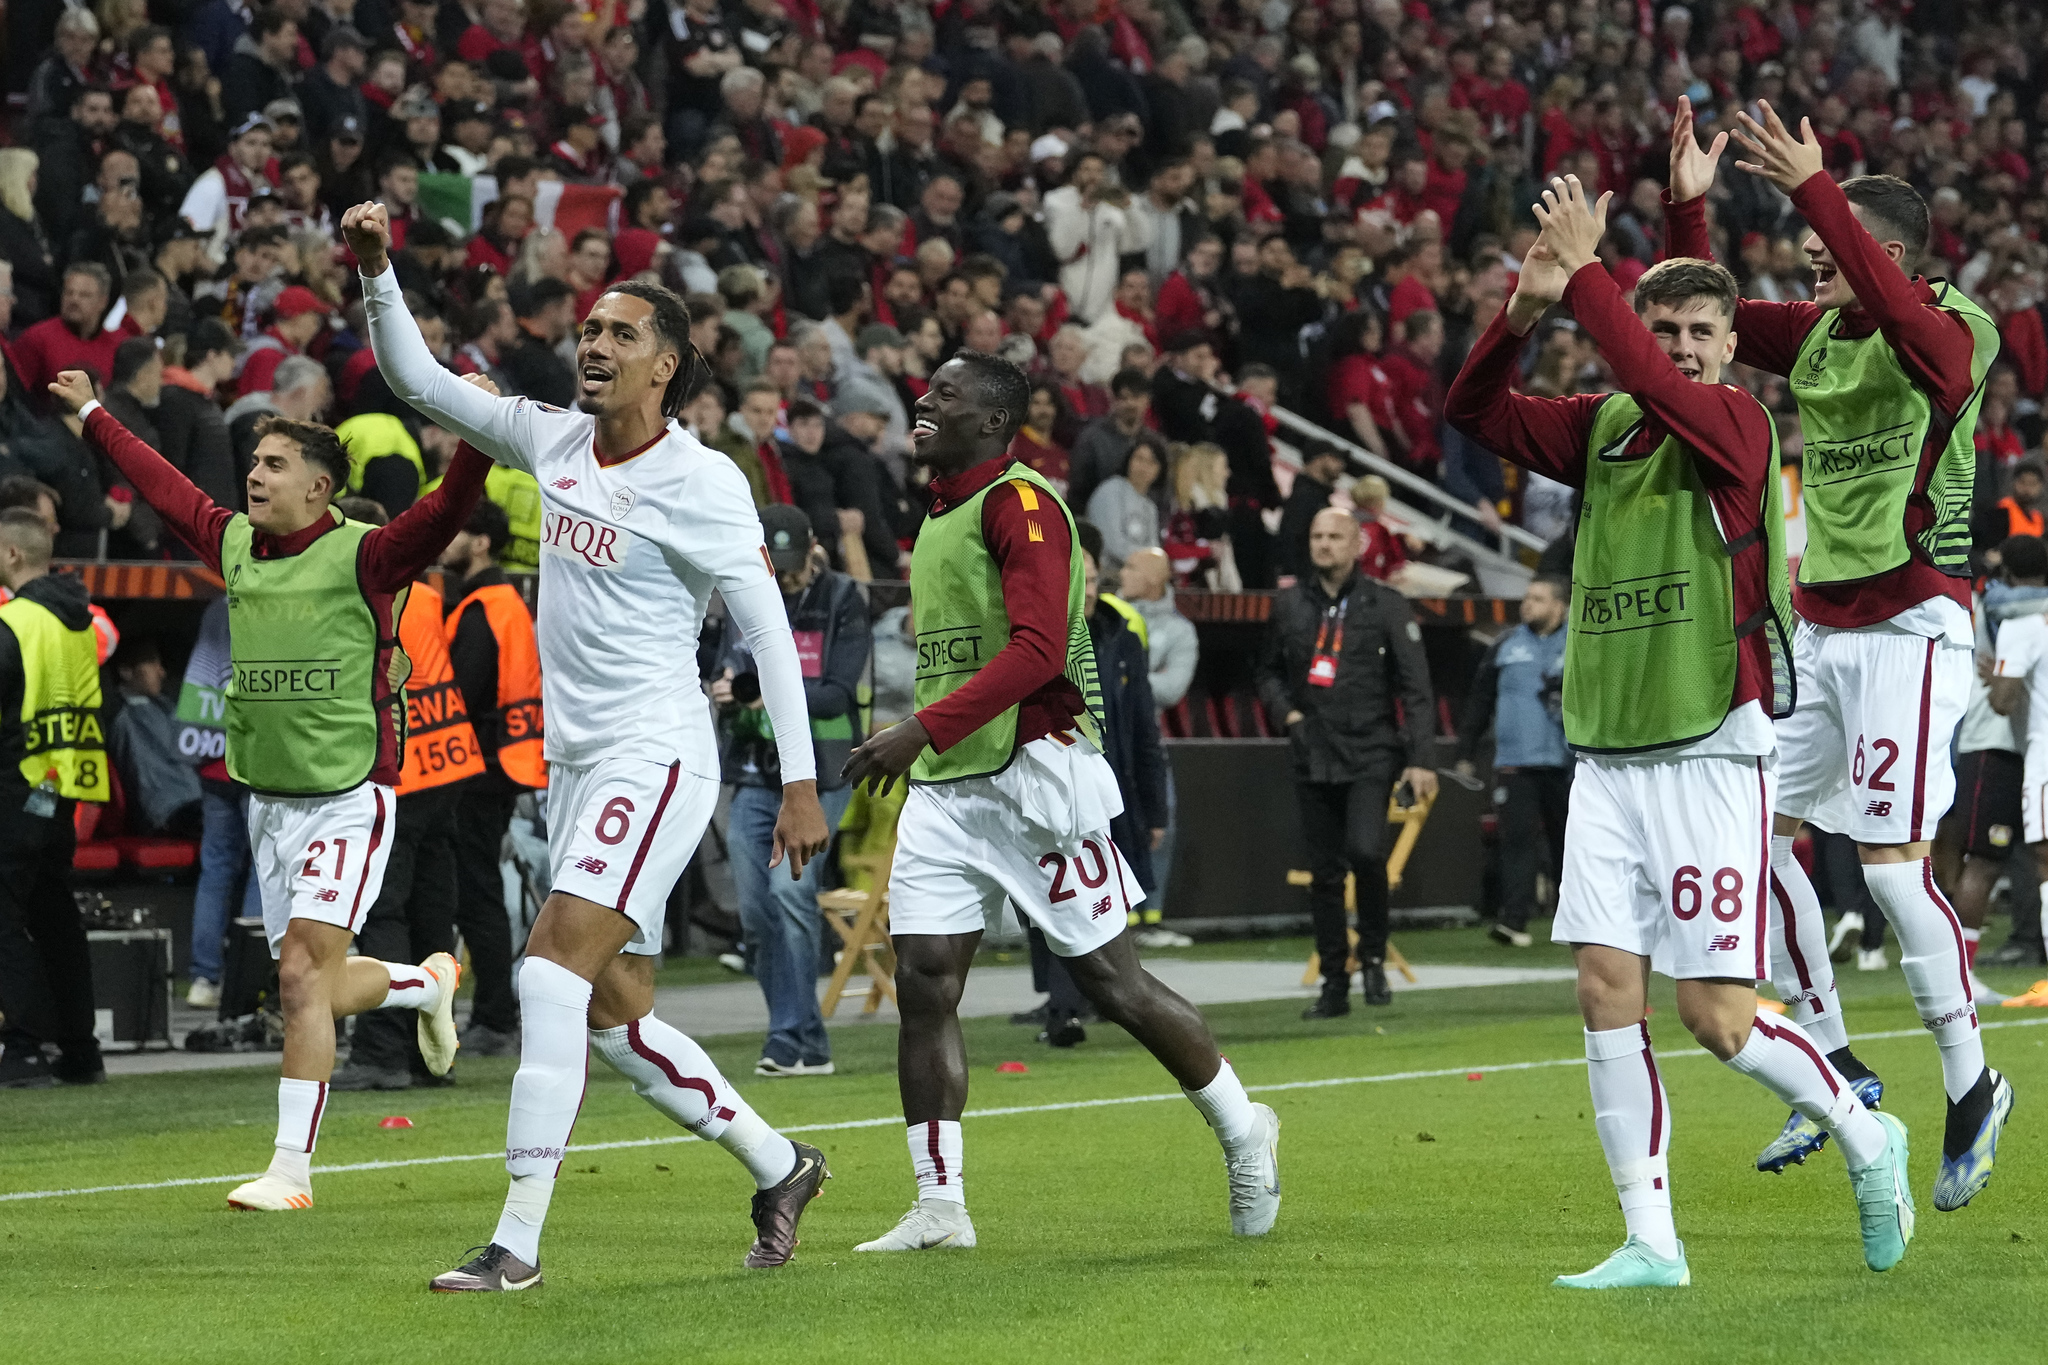 Rome celebrates the Europa League final.